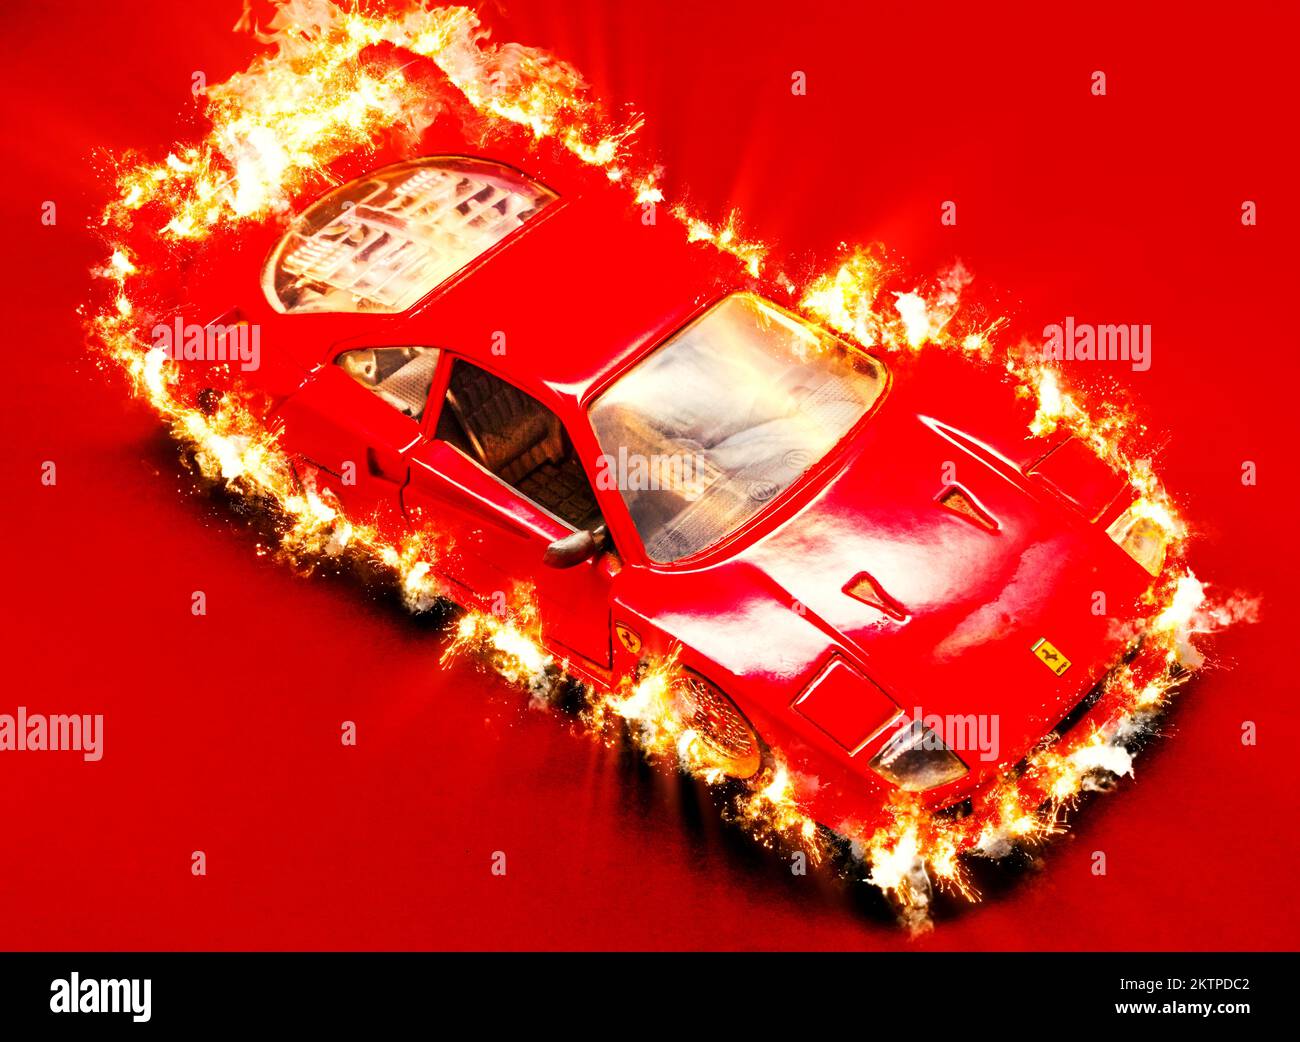 Rojo caliente Ferrari F40 racer quemando chispas de calor chispas del supercoche de la rueda Foto de stock